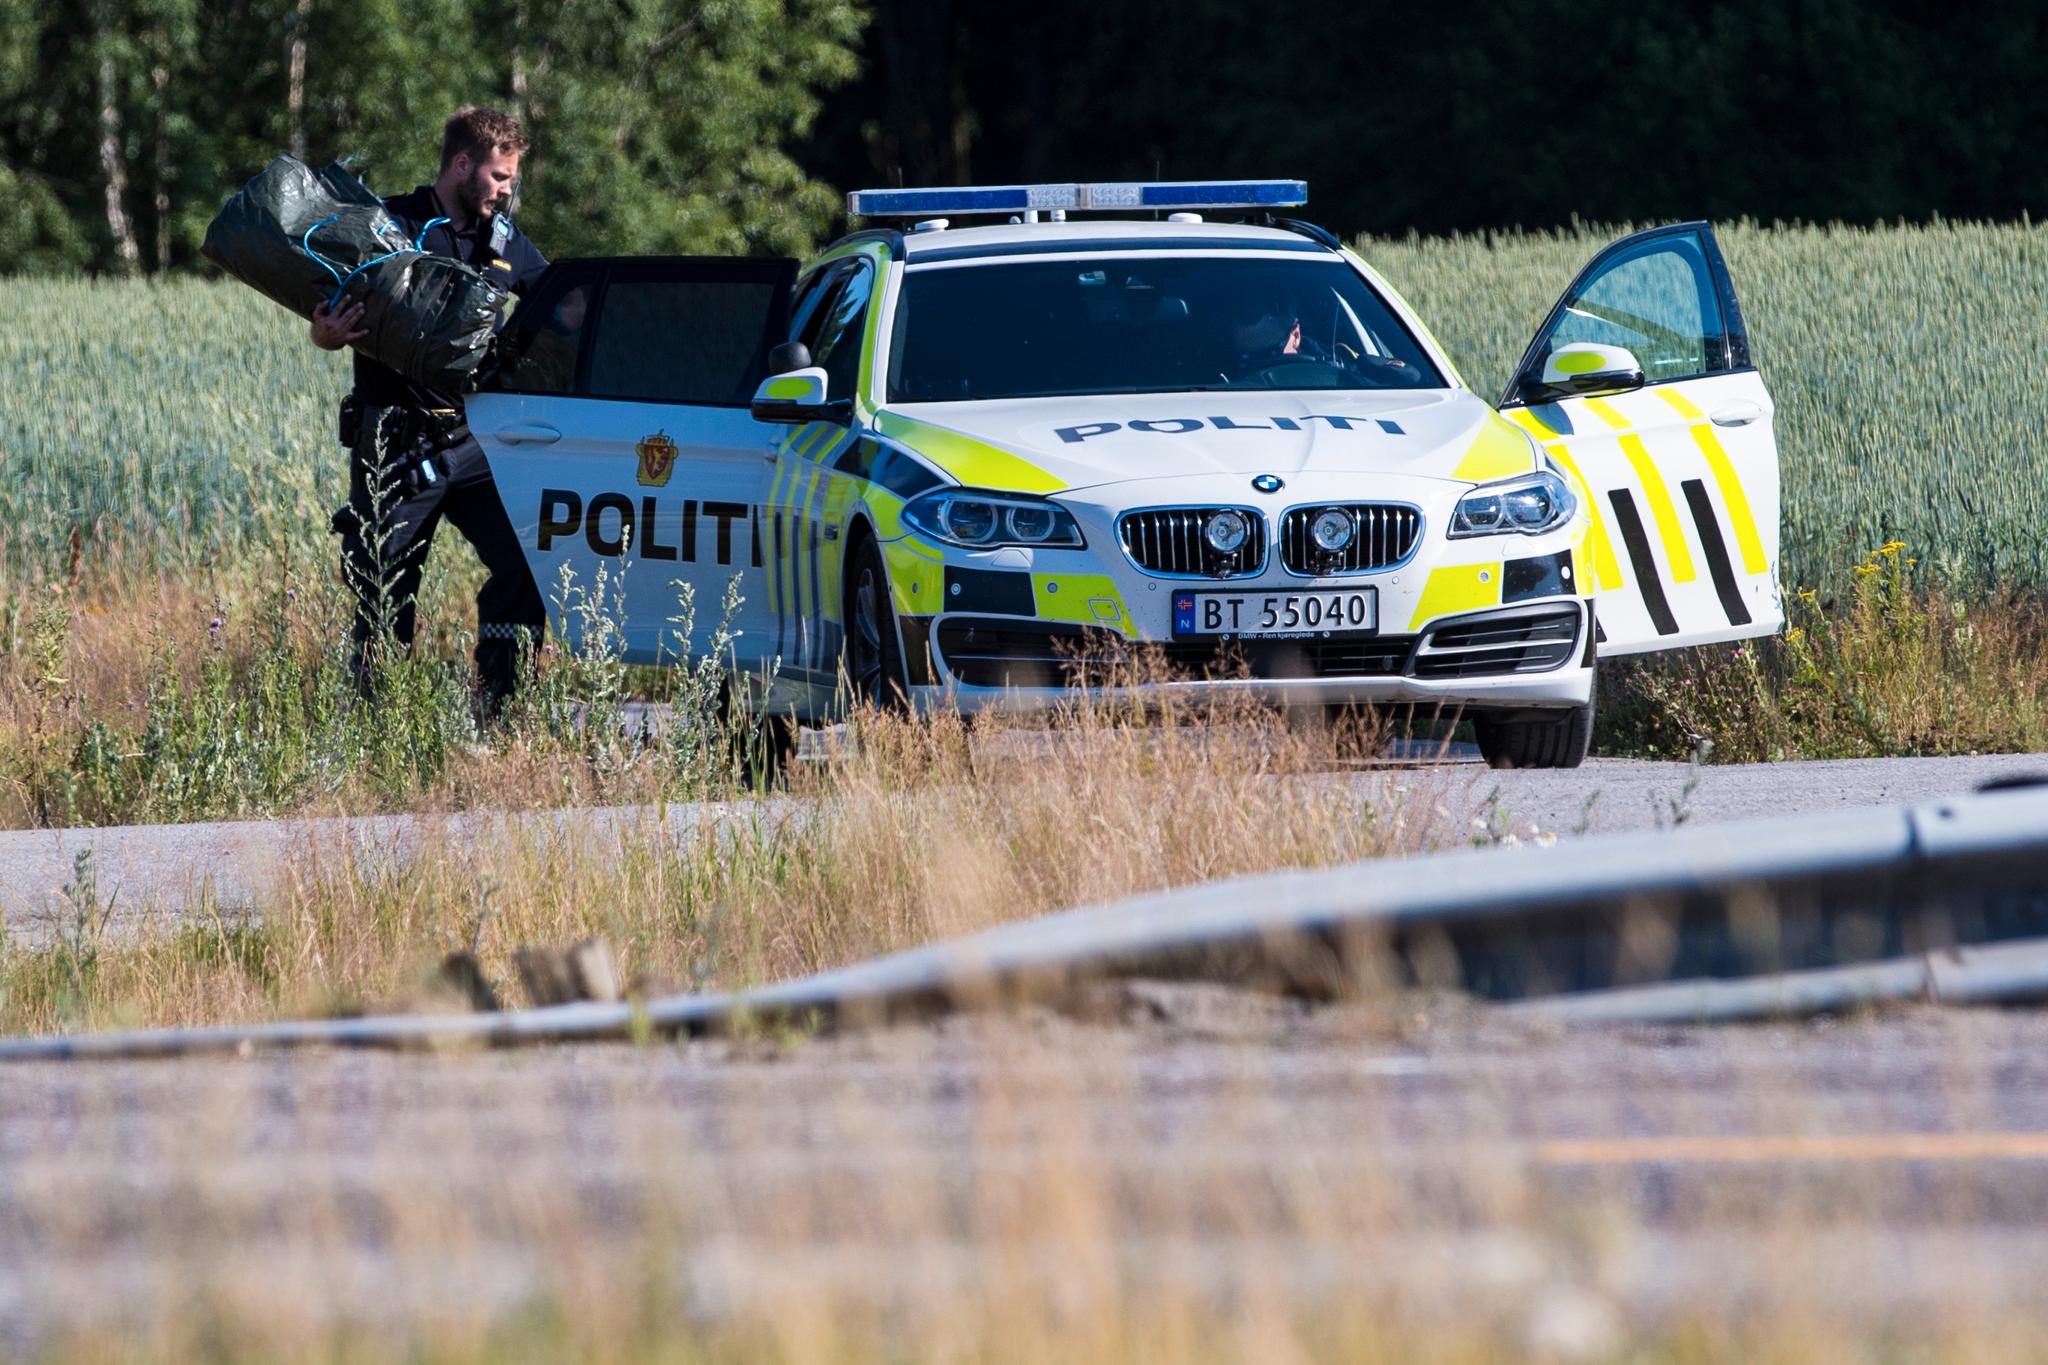  Politiets bombegruppe destruerte torsdag en rørbombe funnet i en stjålet bil i Larvik. 